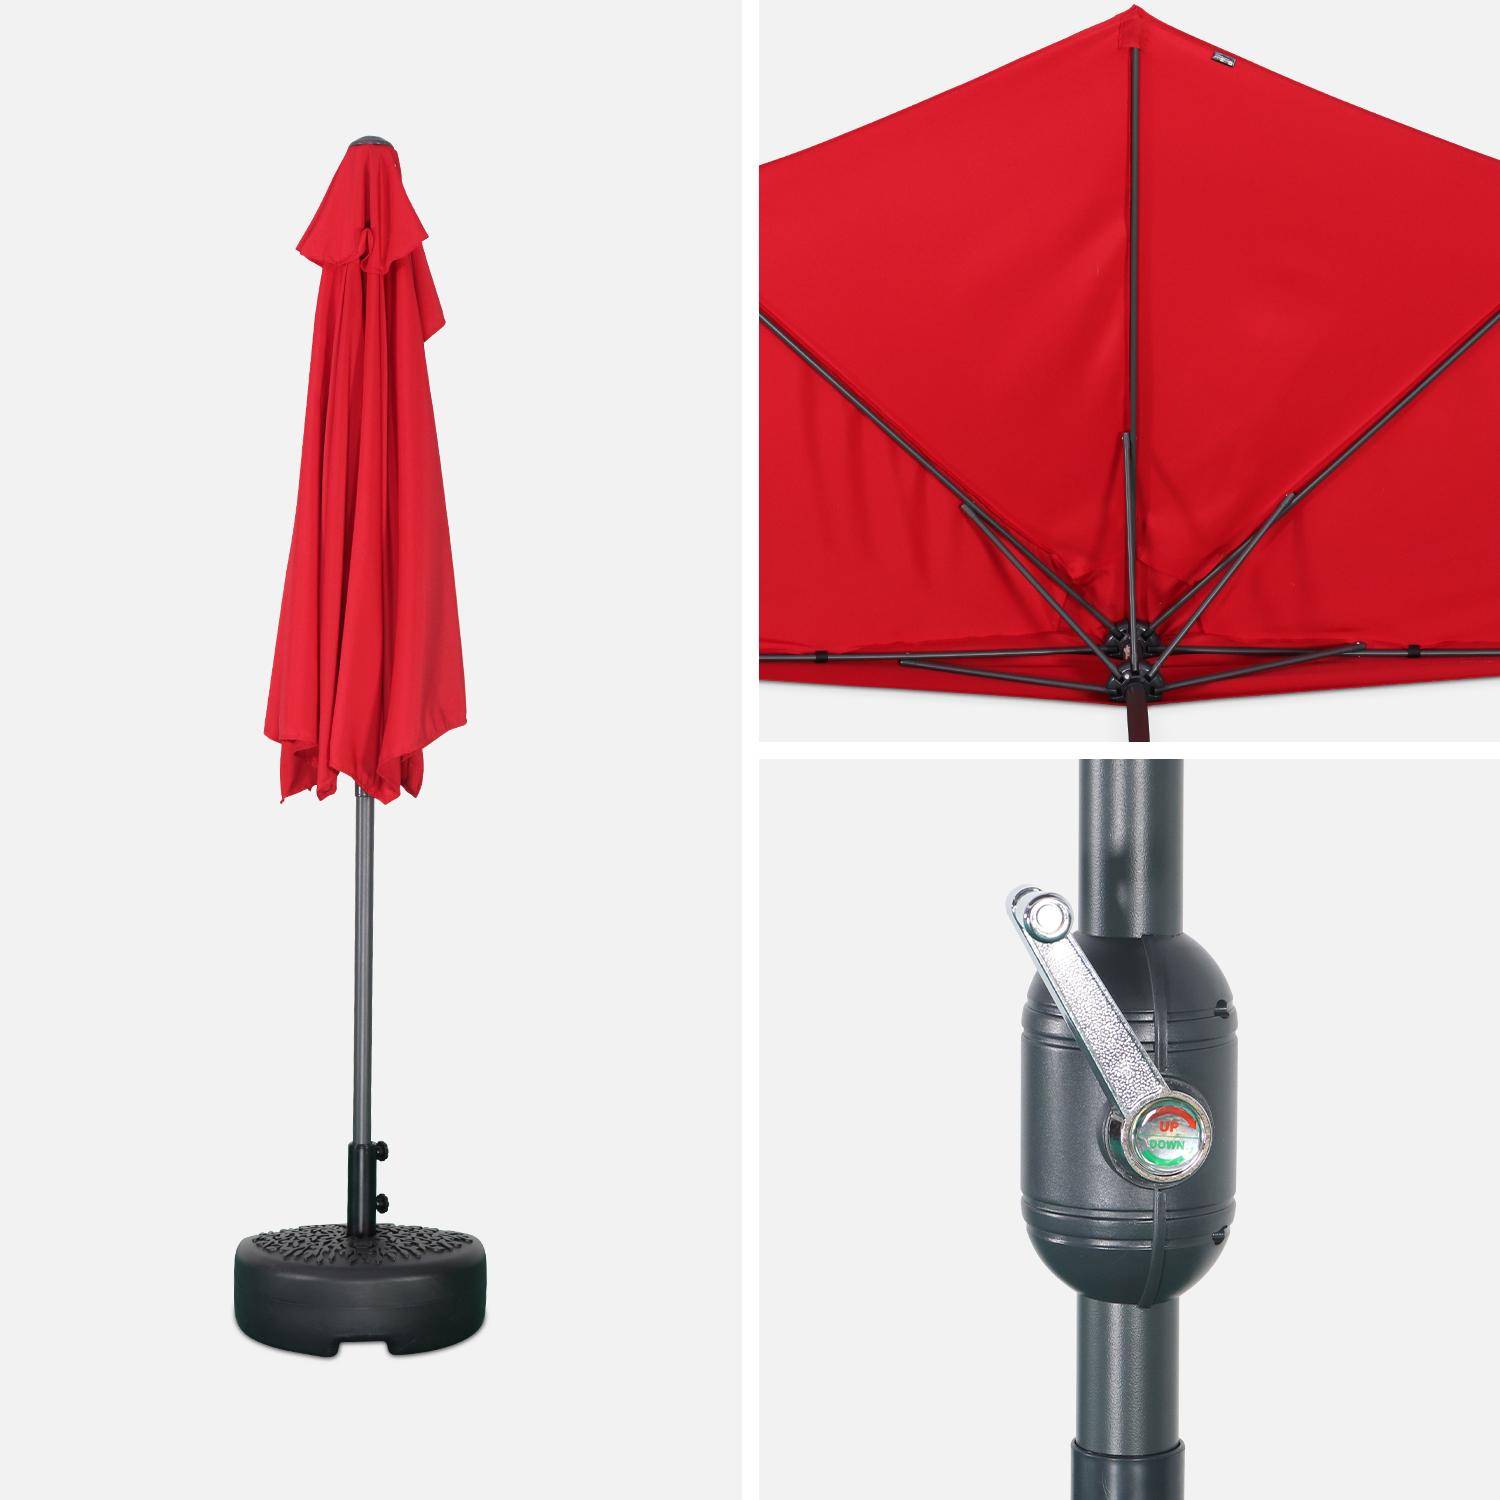  Parasol de balcon Ø250cm  – CALVI – Demi-parasol droit, mât en aluminium avec manivelle d’ouverture, toile rouge Photo4